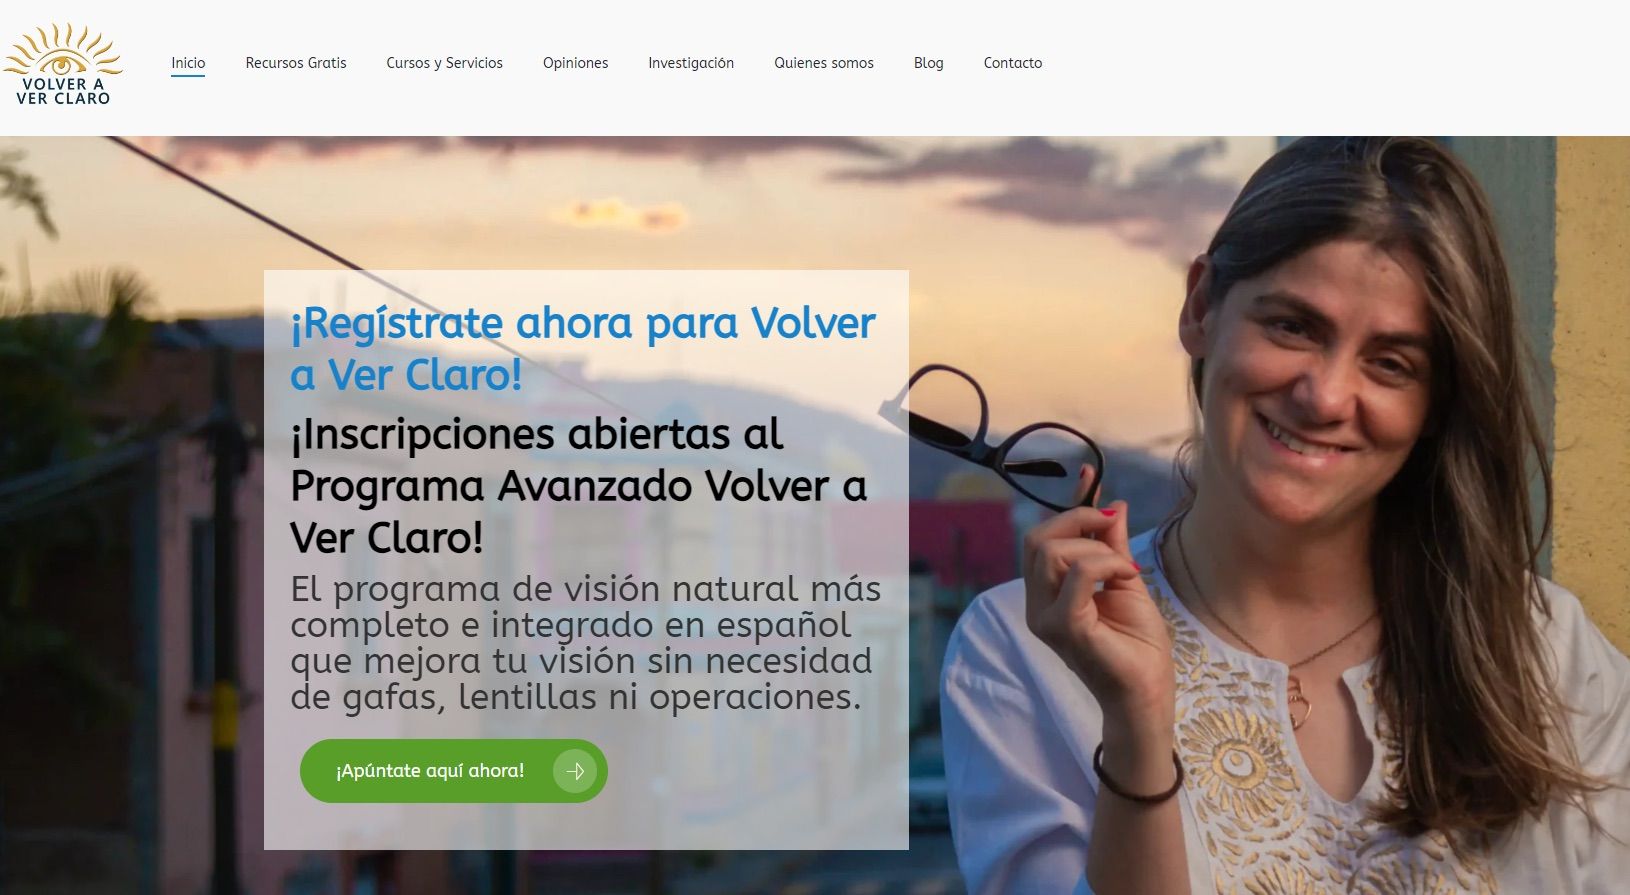 FACUA denuncia a una web que vende cursos 'milagrosos' para corregir problemas de visión